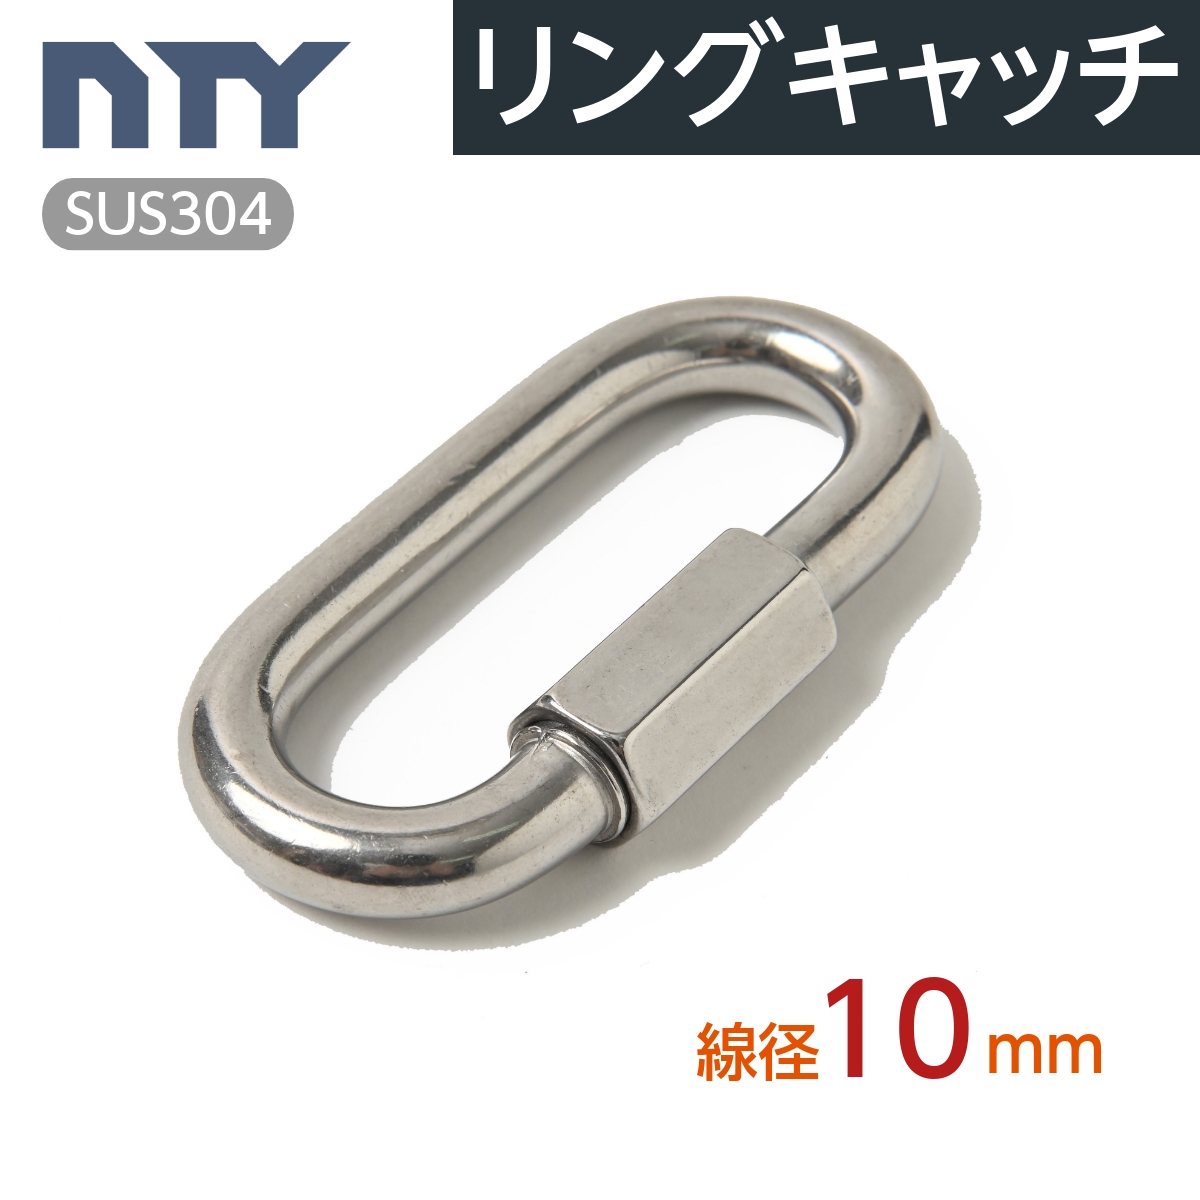 【楽天市場】リングキャッチ 線径 6mm ステンレス ナスカン 連結環